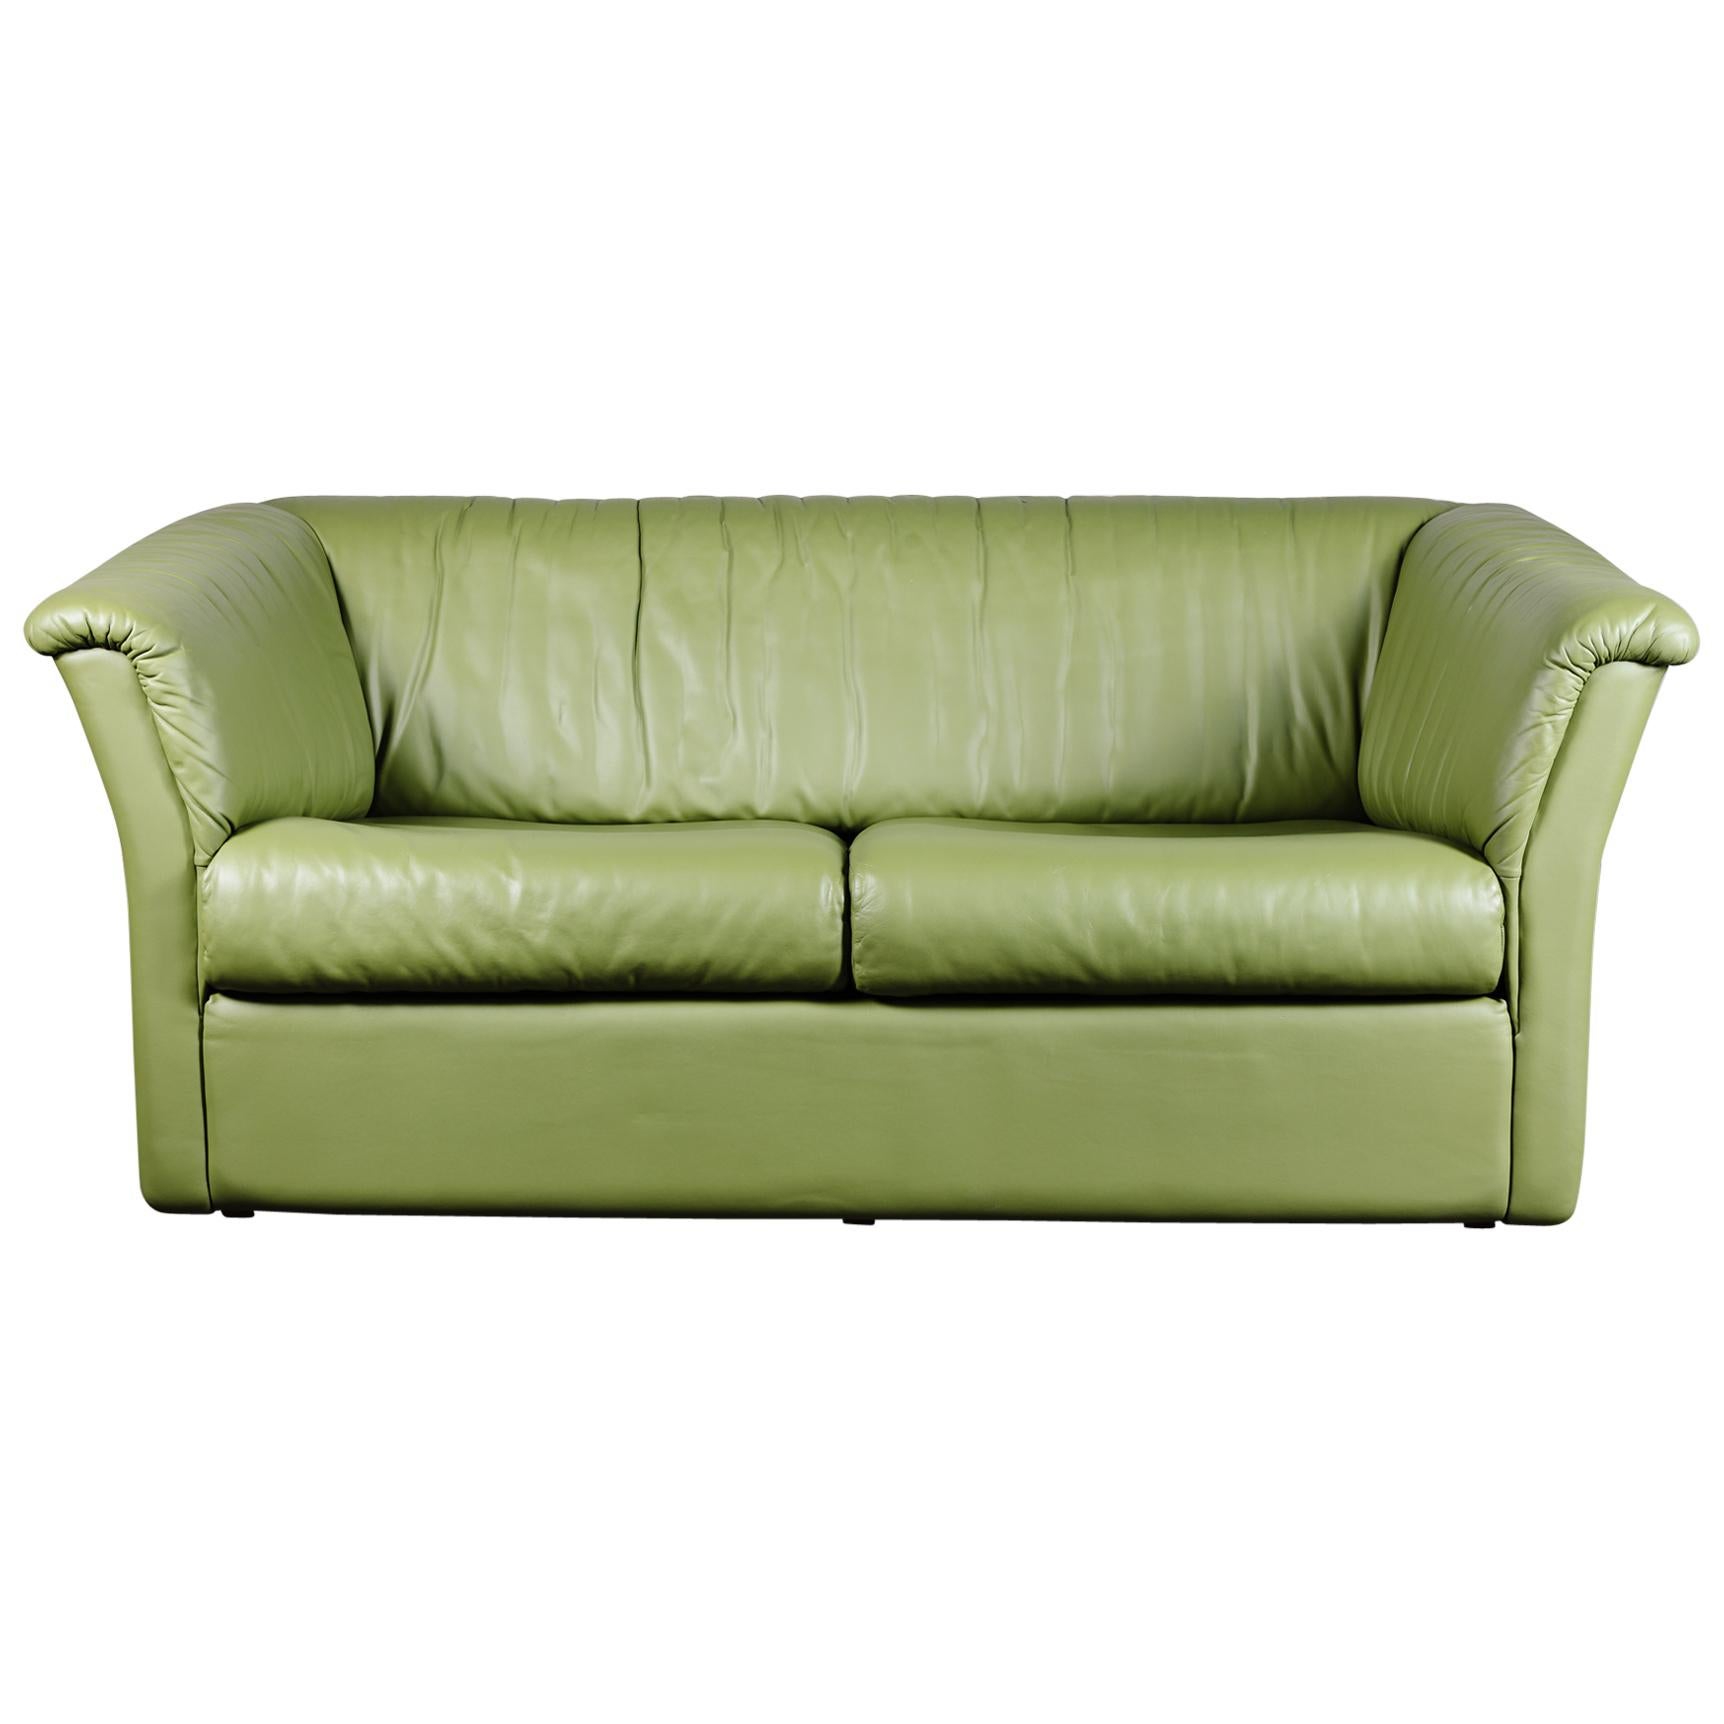 Chic Mid-Century Modern Grünes Leder Sofa / Loveseat von De Sede